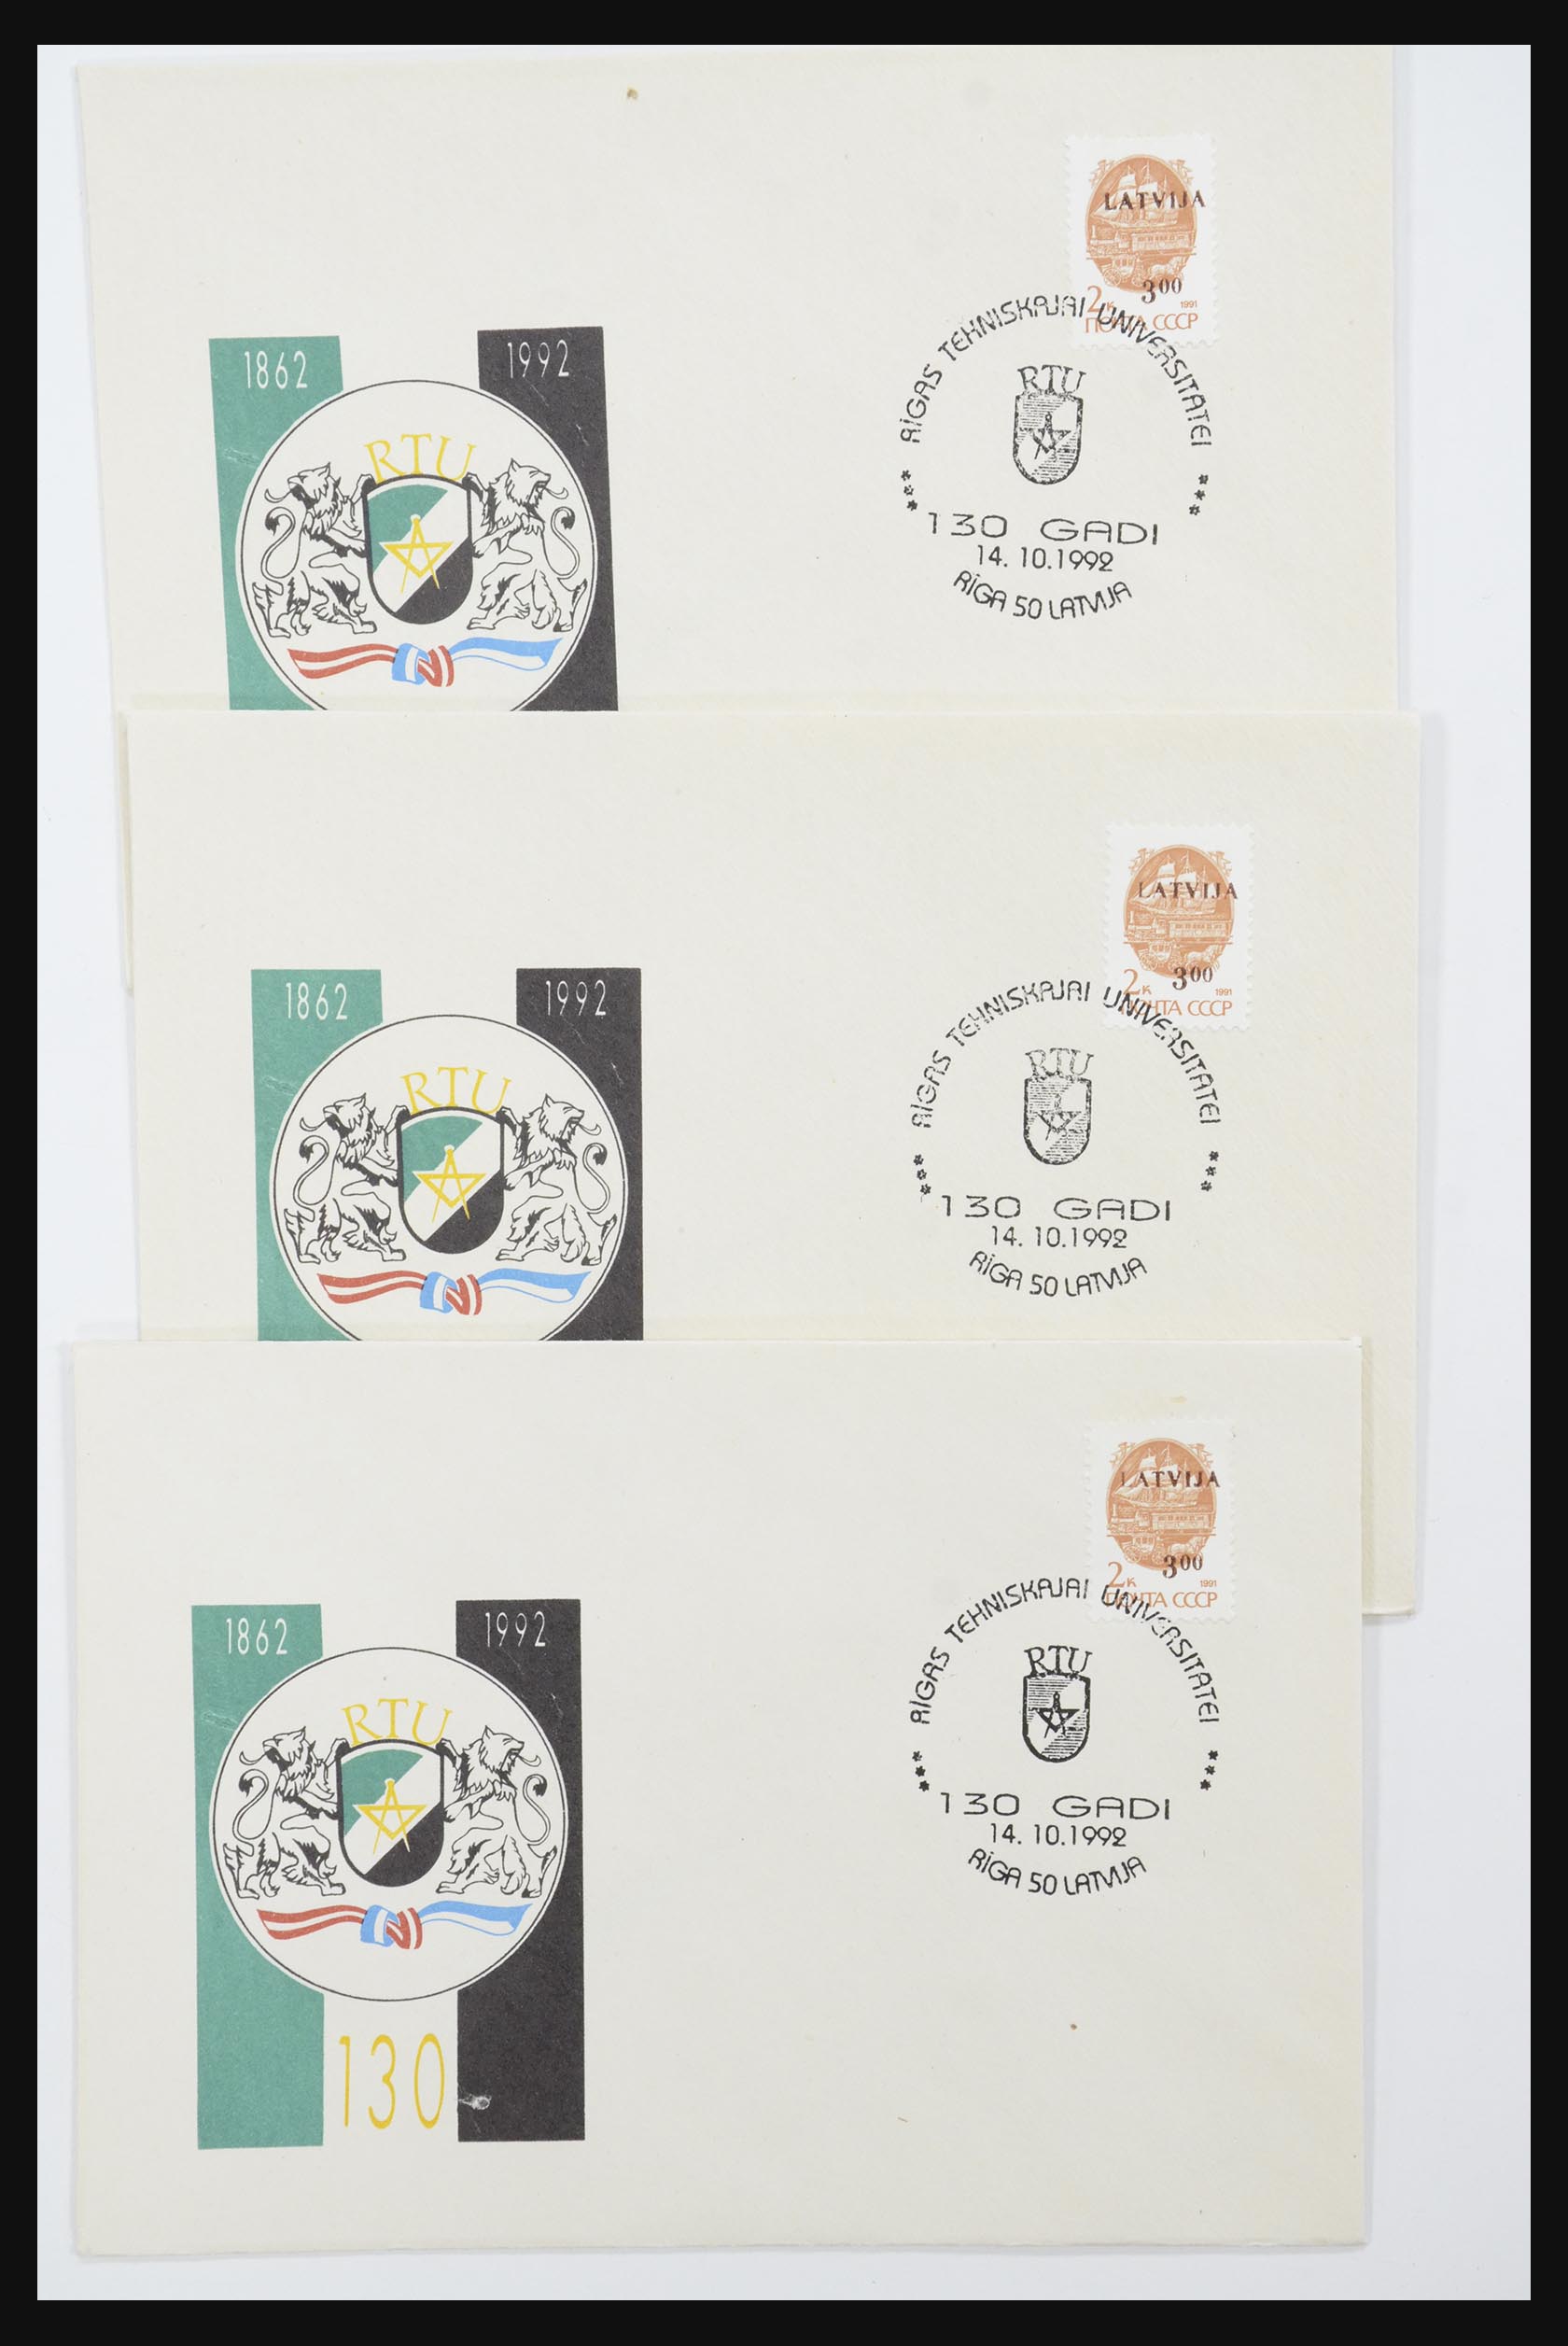 31584 625 - 31584 Letland brieven/FDC's en postwaardestukken 1990-1992.